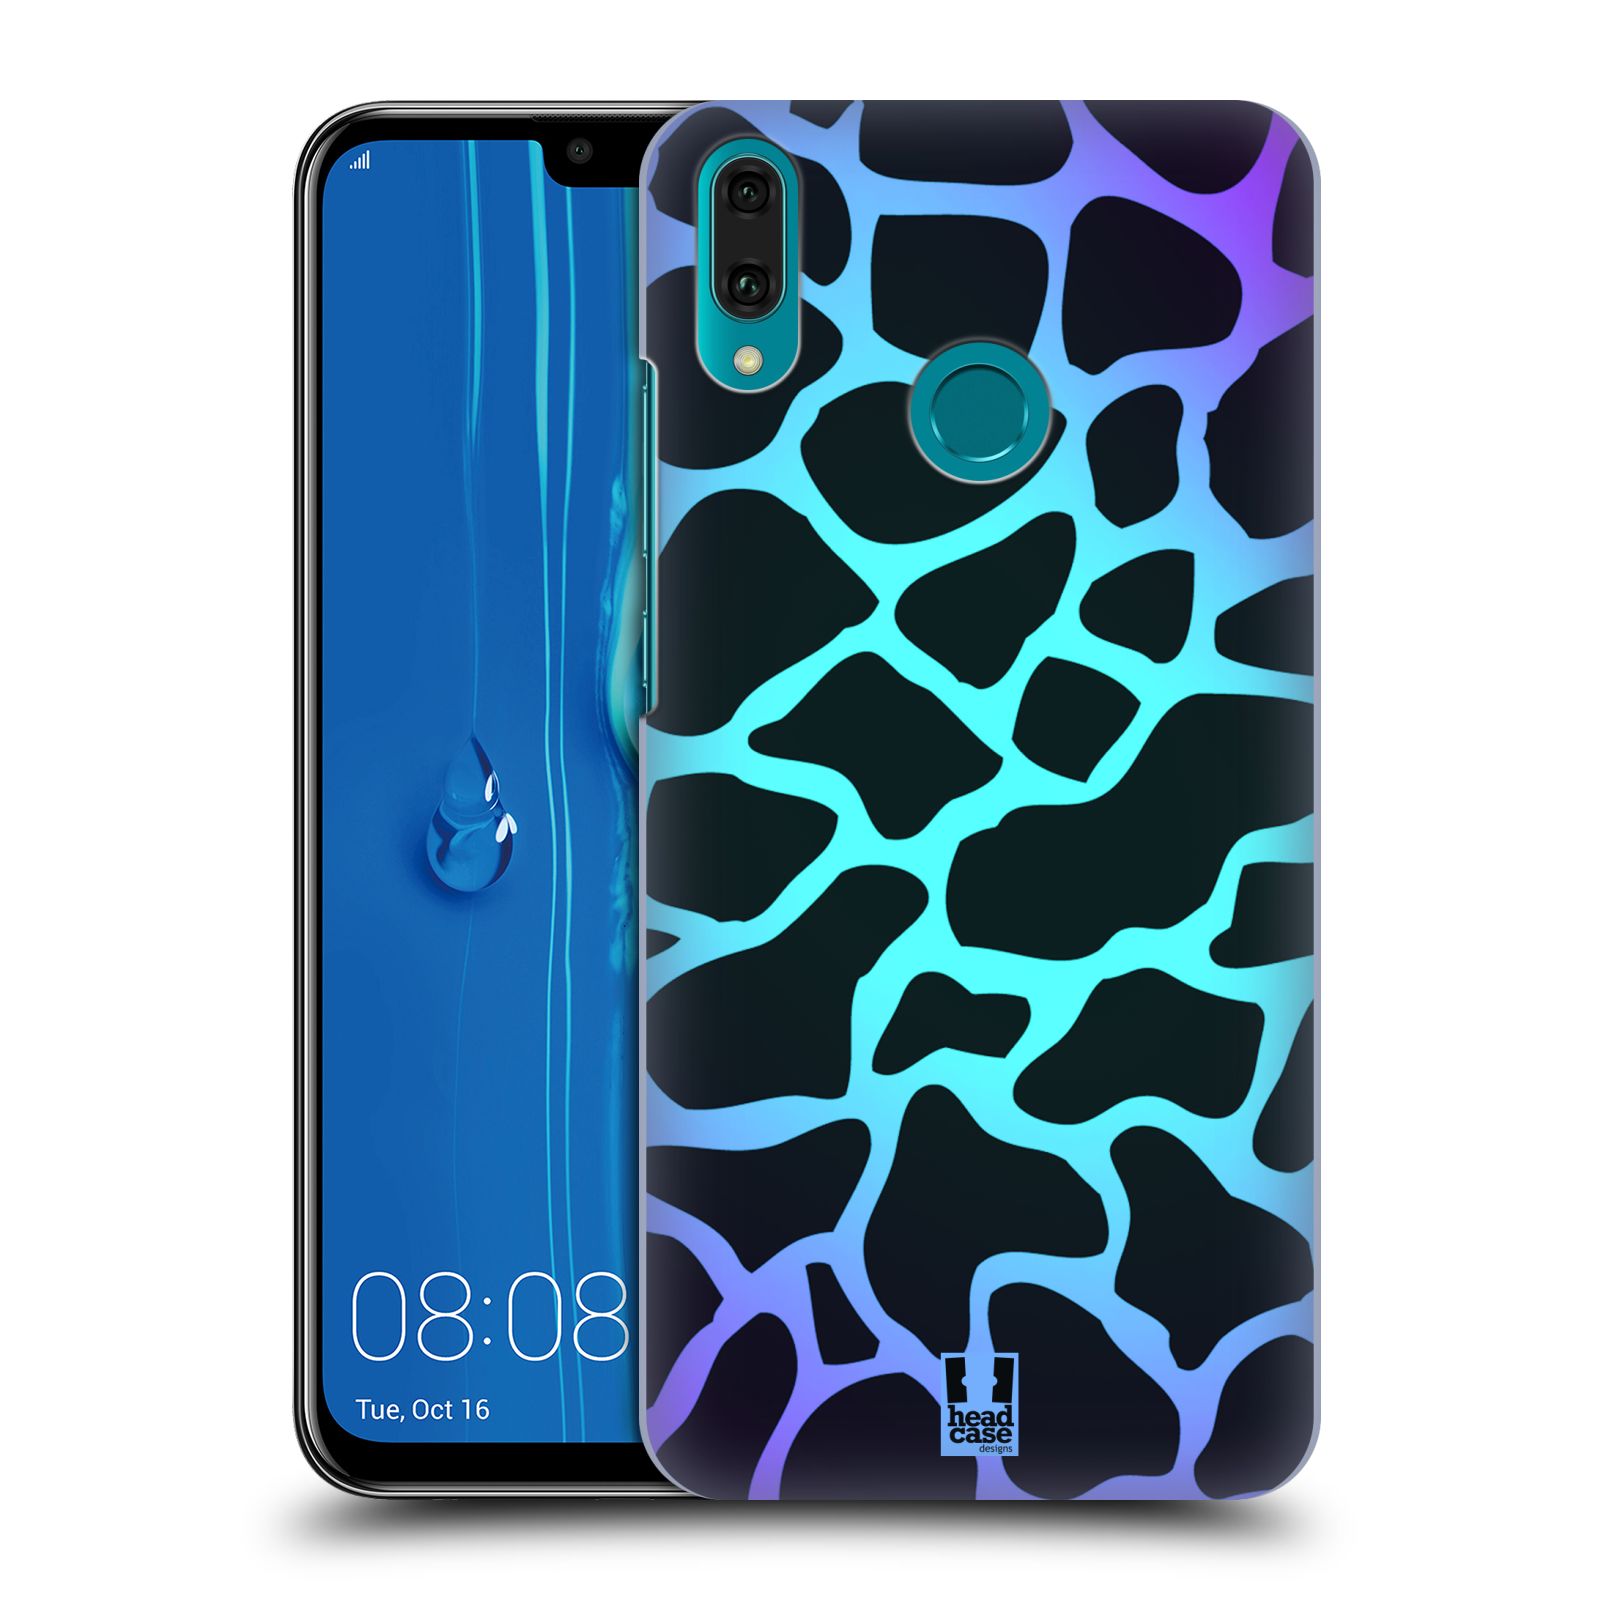 Pouzdro na mobil Huawei Y9 2019 - HEAD CASE - vzor Divočina zvíře tyrkysová žirafa magický vzor